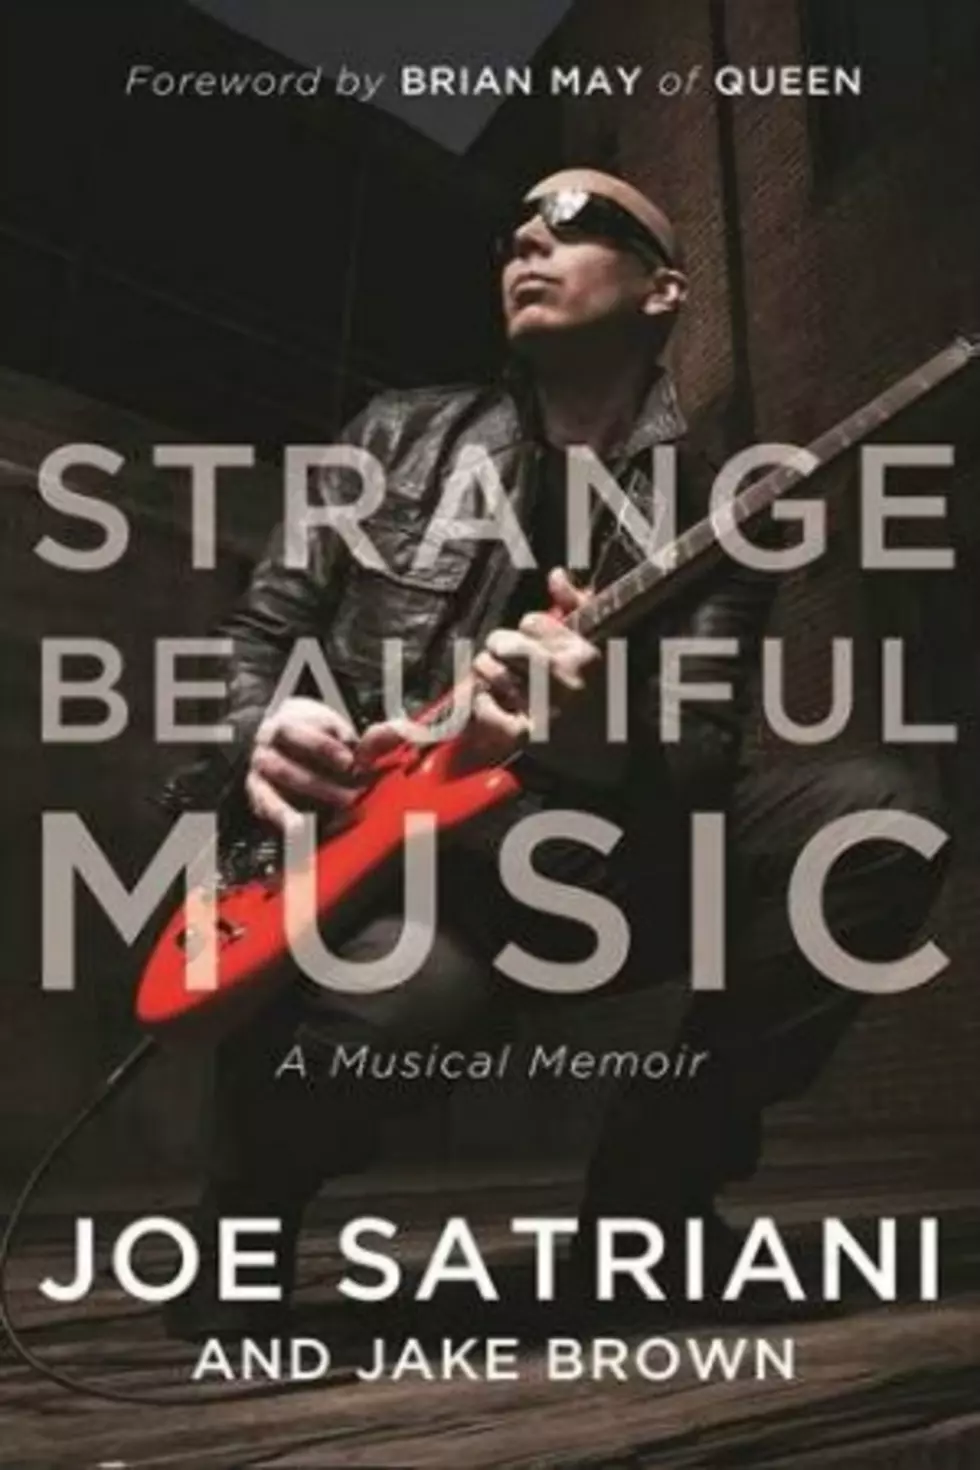 Joe Satriani Announces Memoir